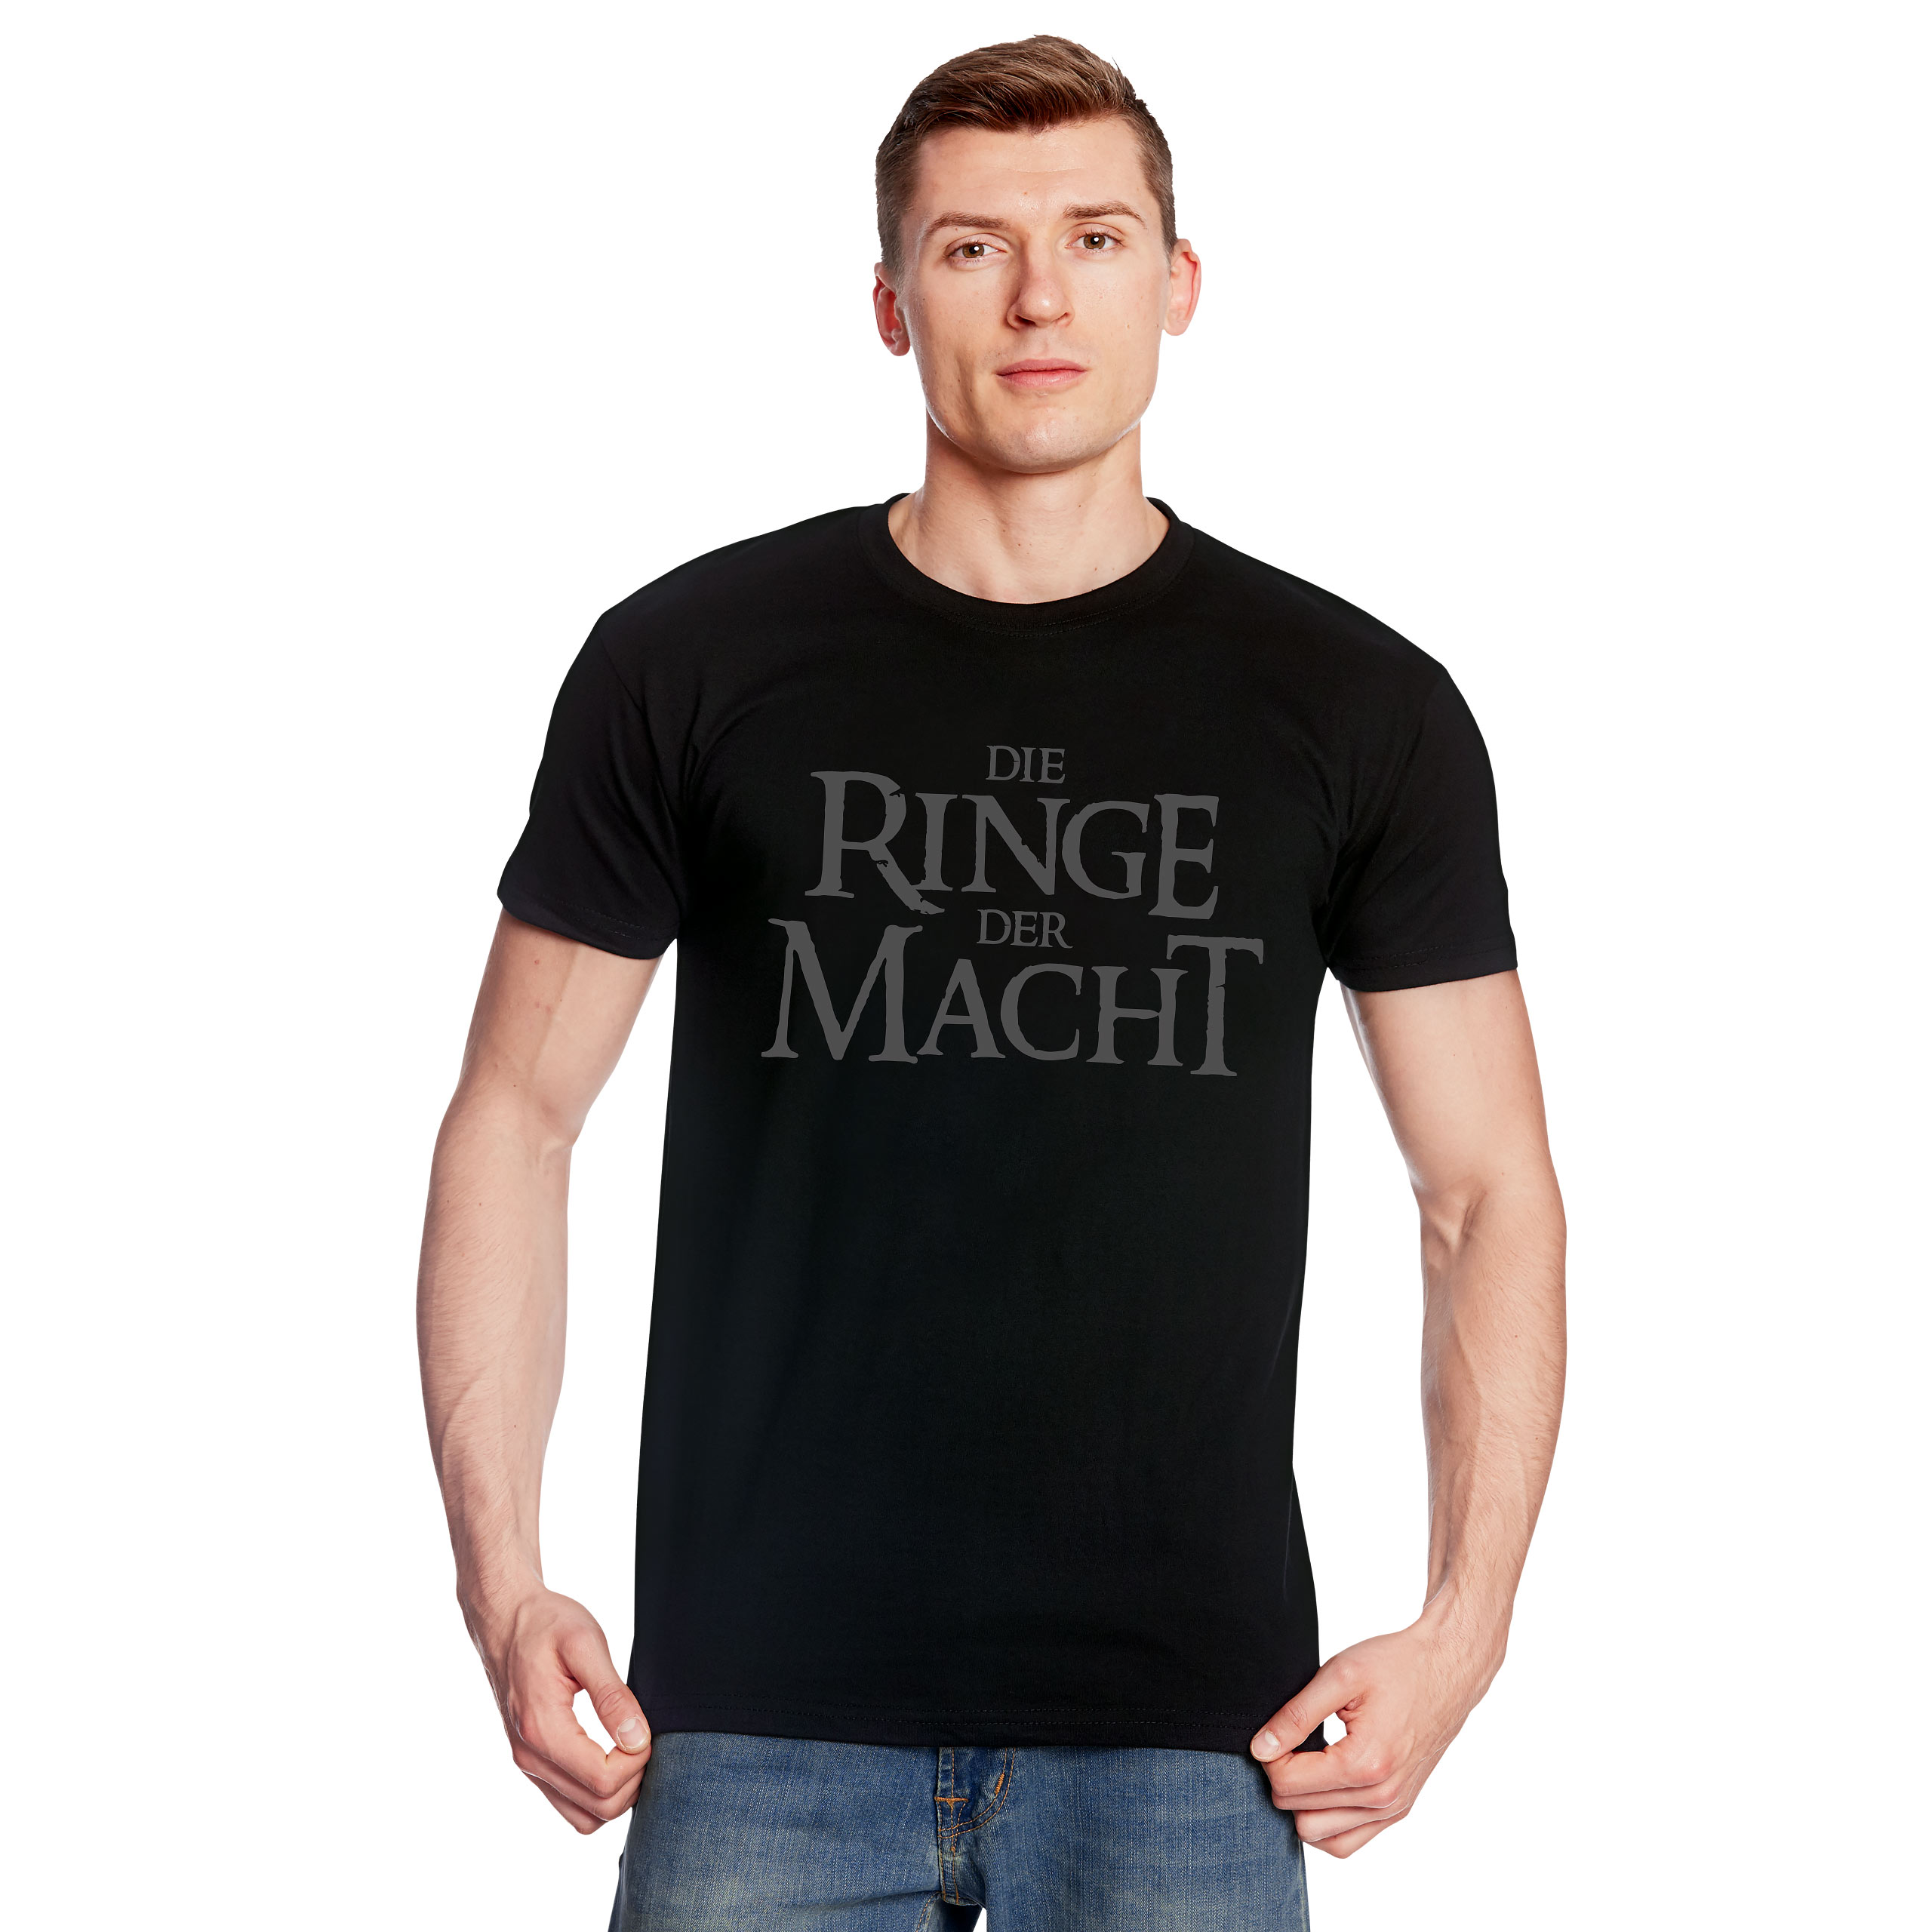 Die Ringe der Macht T-Shirt für Herr der Ringe Fans